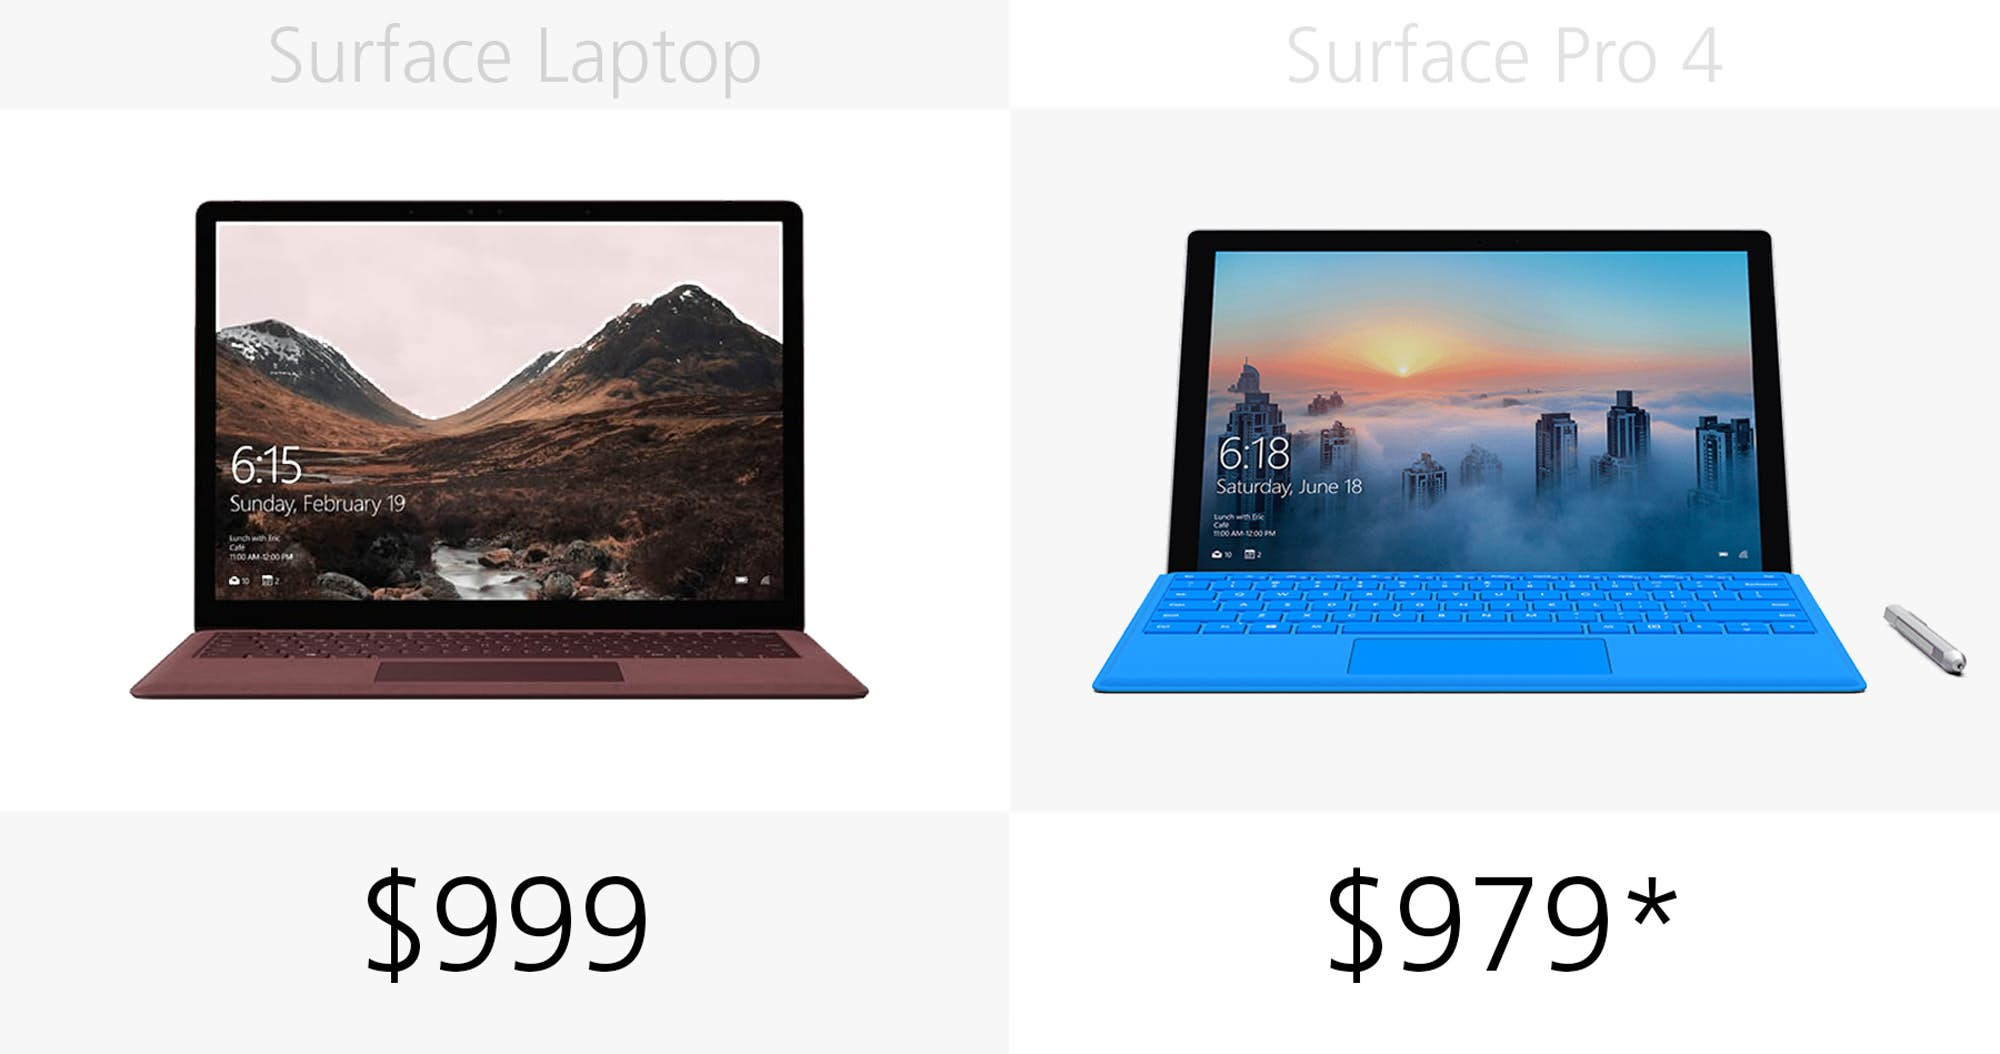 1493969697_microsoft-surface-laptop-vs-surface-pro-4-specs-comparison-3.jpg